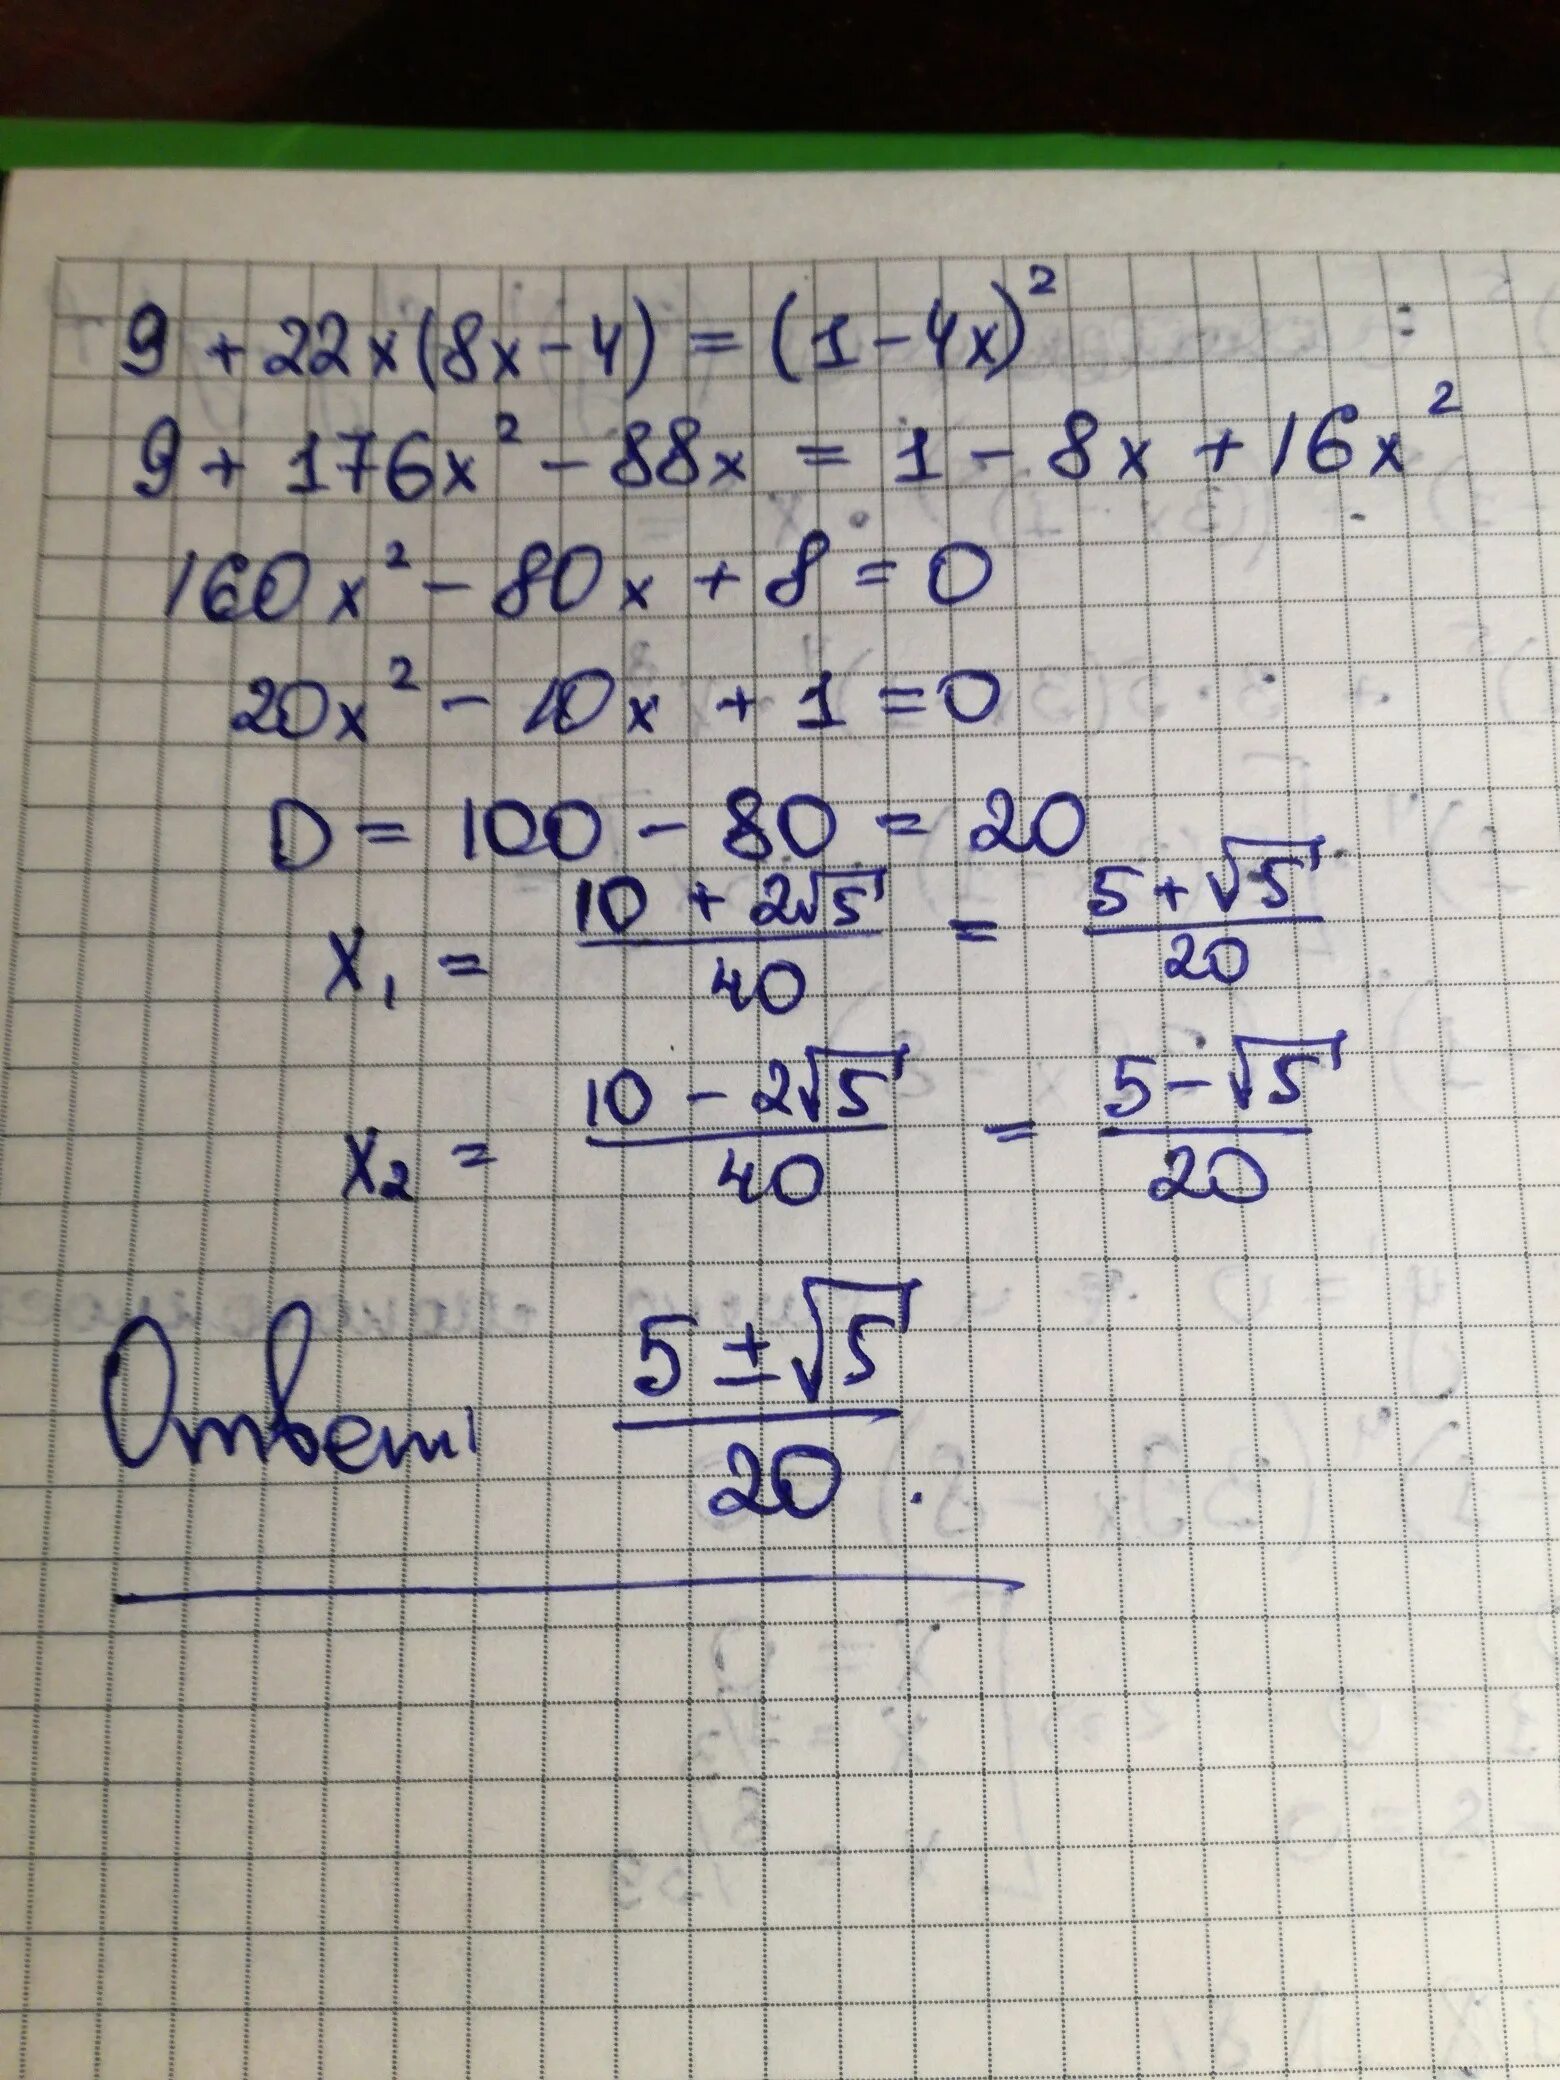 13х 9 реши уравнение. (Х-2)(Х-4)=8. 4х=8х. -4х^2+8х-4. (-2х+9)(-х+8)=0.